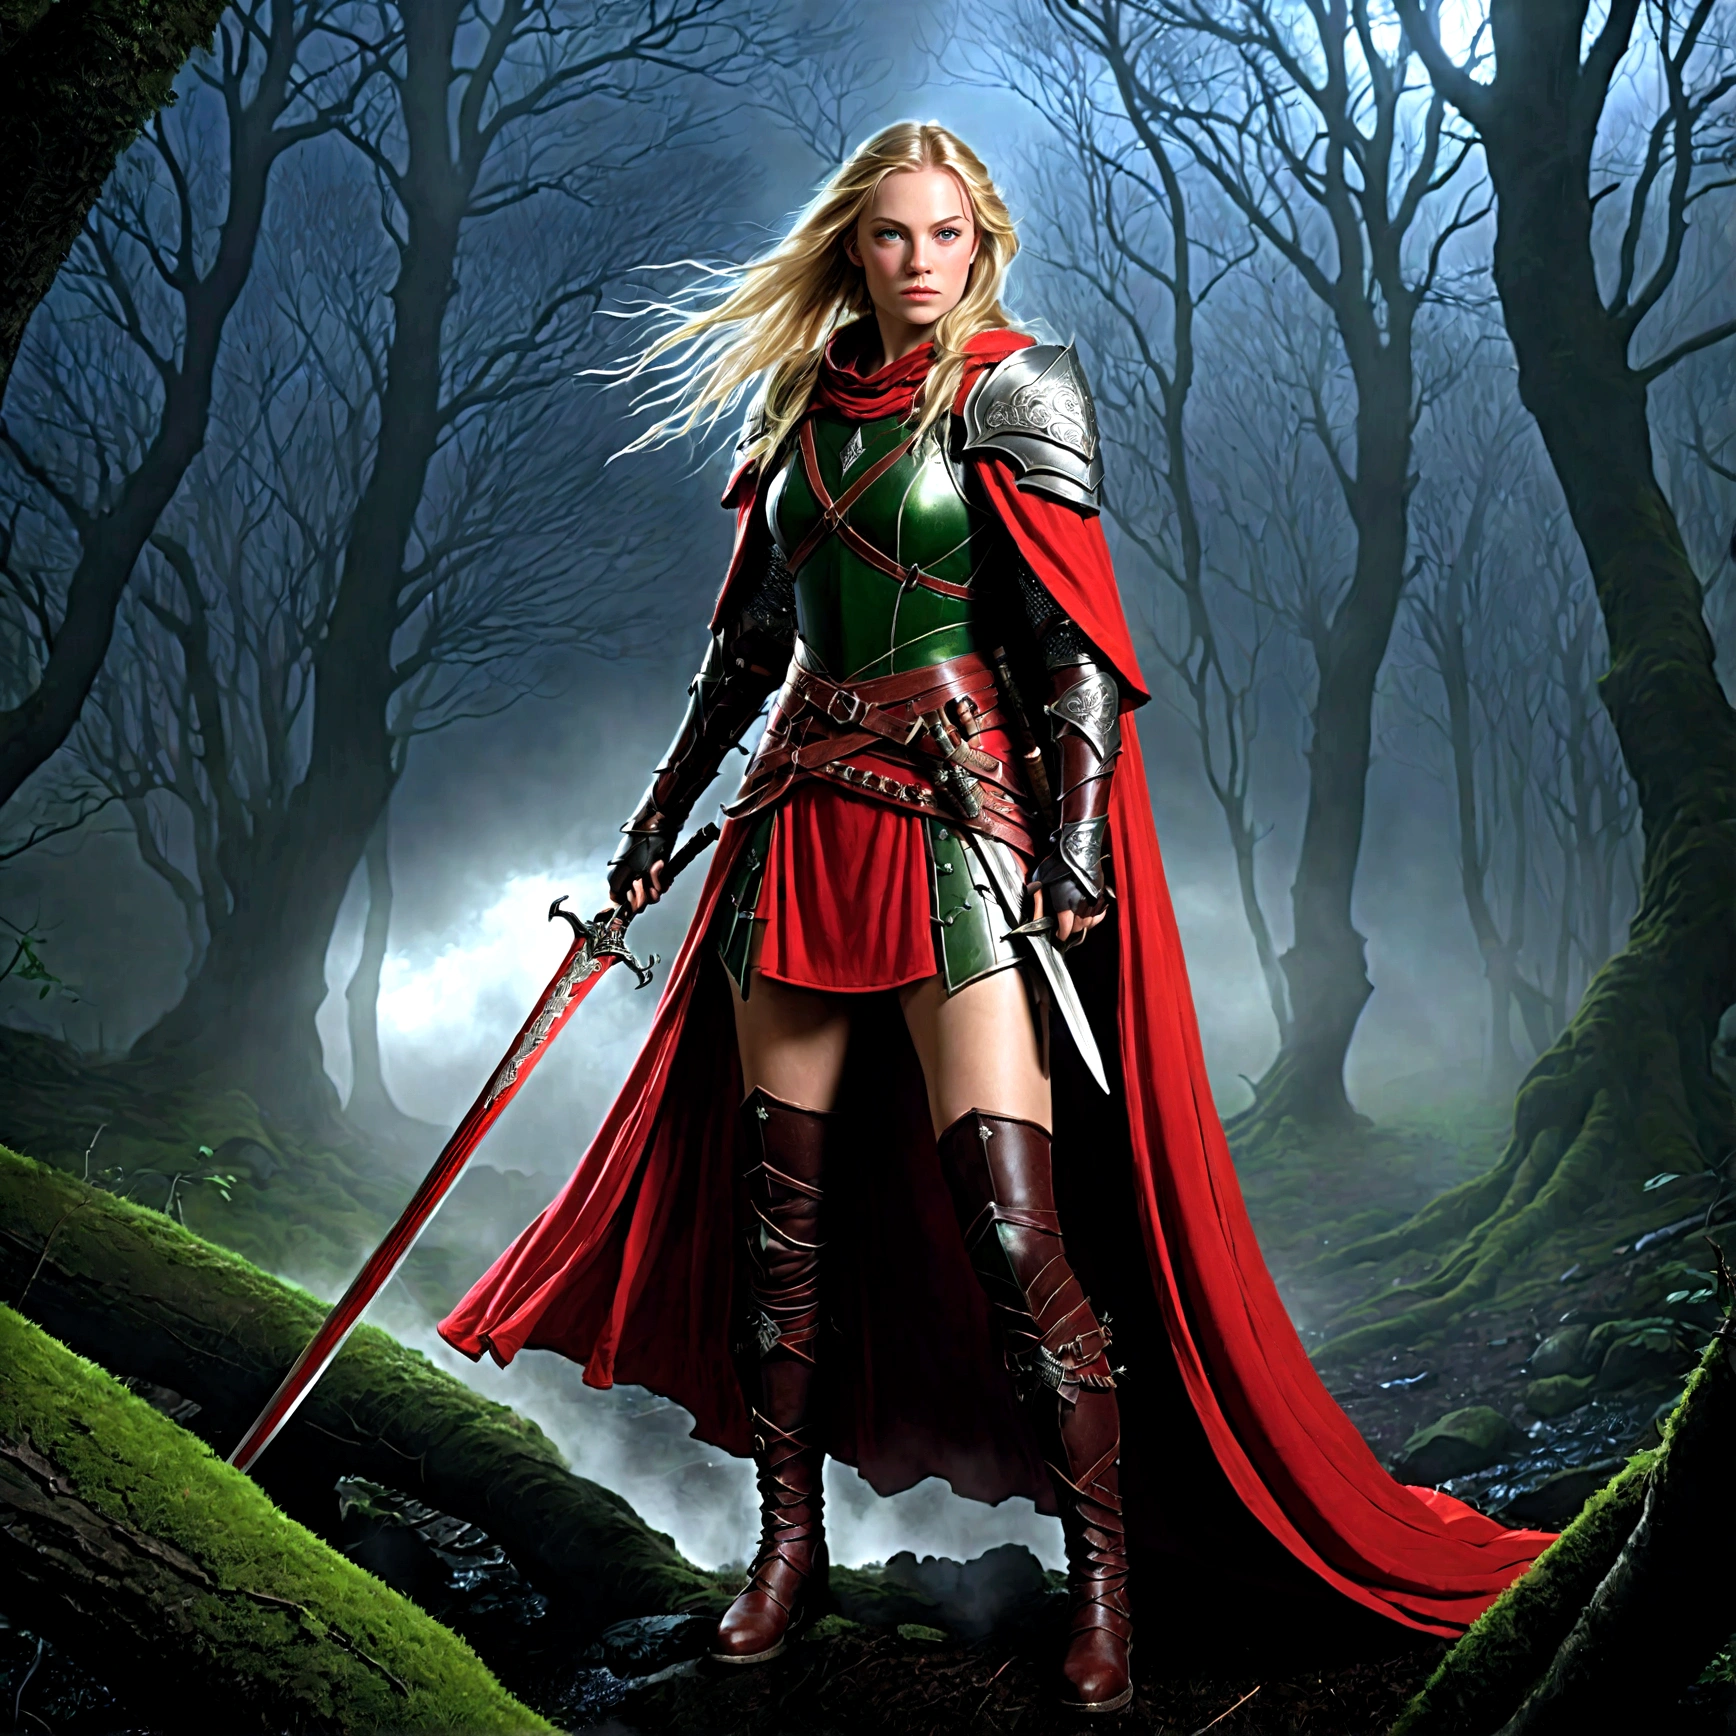 幻想藝術, 角色扮演藝術, Dark 幻想藝術, 超廣角鏡頭, 生的, 逼真的, 的一張照片 (1單人: 1.5) 女性人類遊俠, 護林員, 一個精緻美麗的人類女人, 金色長髮, 辮髮, 綠眼睛, 穿著 leather armor, 穿著 (紅色斗篷: 1.1), 武裝有 (劍: 1.3), 穿著 laced boots, 夜晚站在黑暗的森林裡, (霧氣從地面升起: 1.3), 恐懼感, 但她卻勇敢無畏, 黑暗奇幻森林背景, 最好的品質, 16k, [超詳細], 傑作, 最好的品質, (超詳細), 全身, 超廣角鏡頭, 照片寫實主義, 劍與盾, 黑暗小說